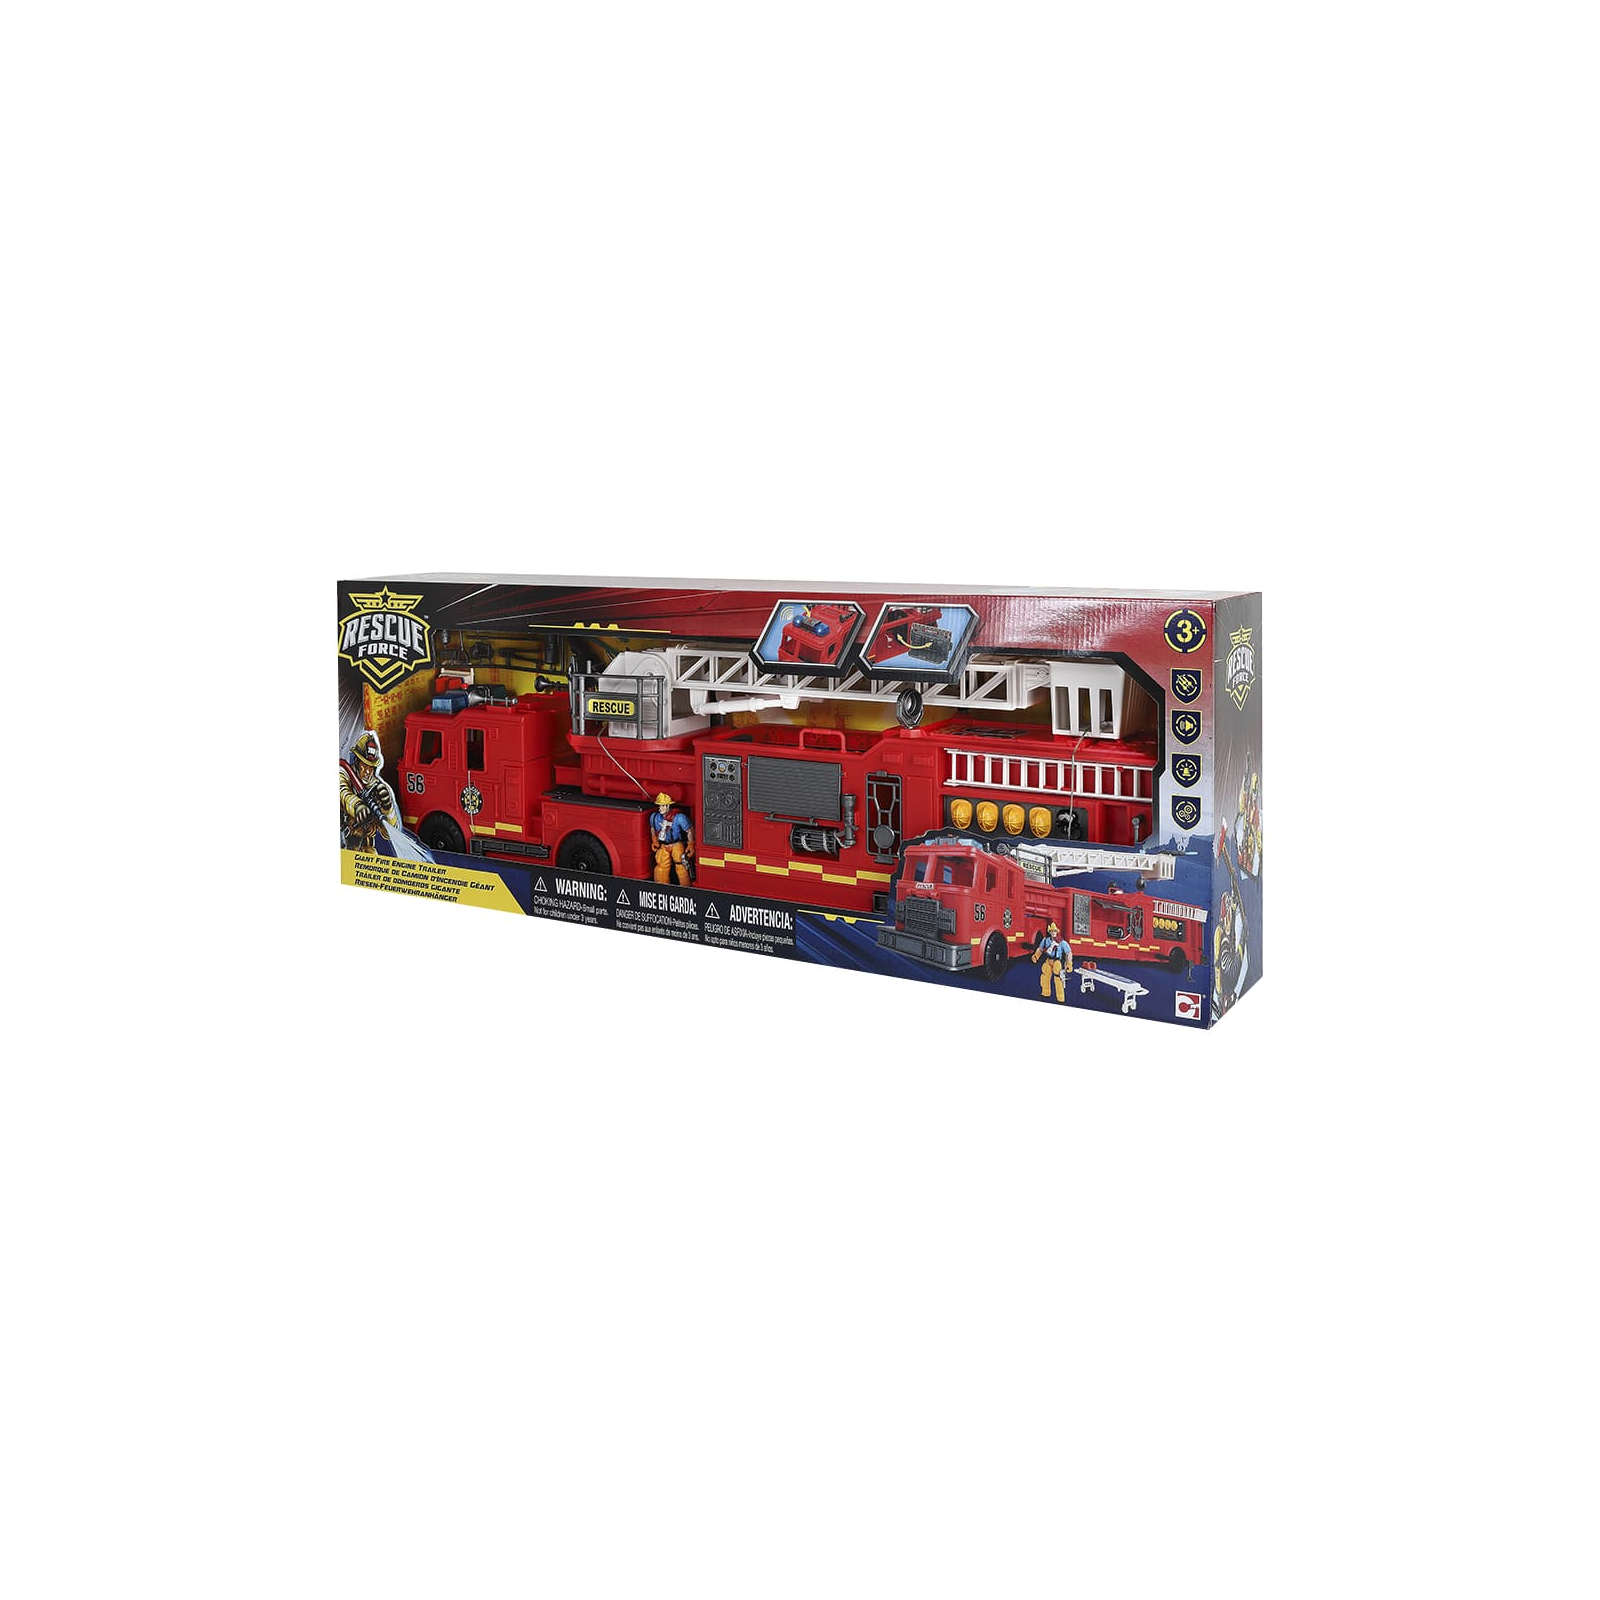 Спецтехника Motor Shop Спасатели Giant Fire Engine Trailer Гигантская пожарная машина (546058)